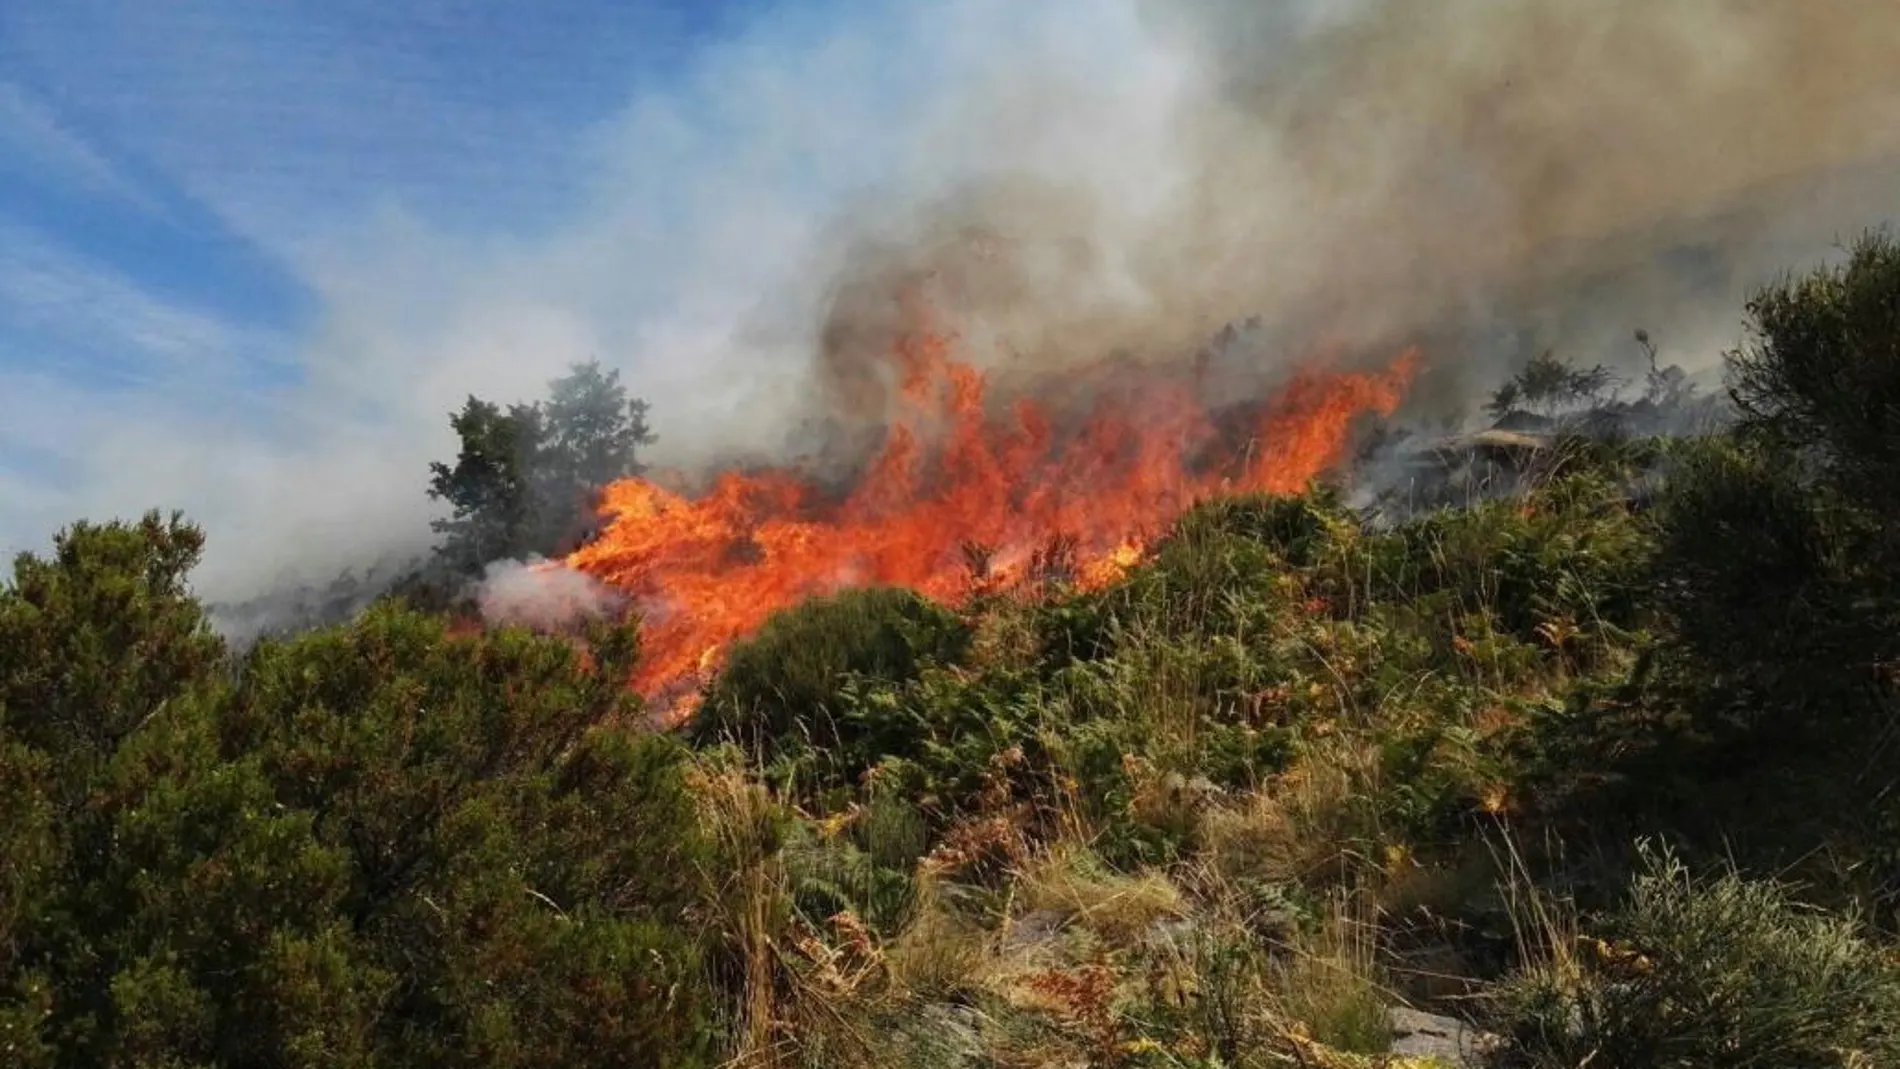 Fotografía facilitada por la Asociación Natura 2000 de uno de los focos del fuego.